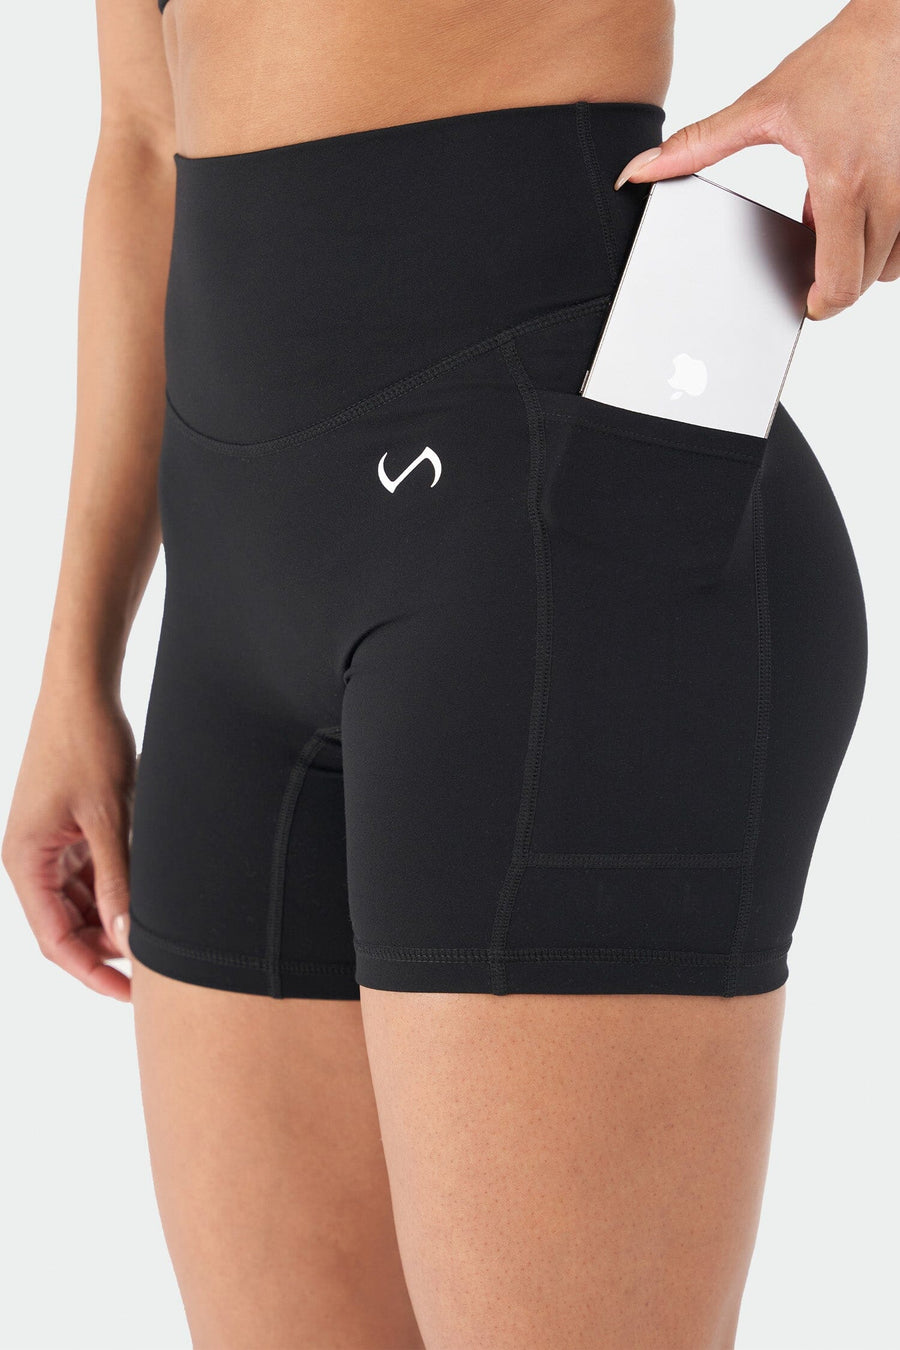 Reset Side Pocket Gym Shorts - Black - 2